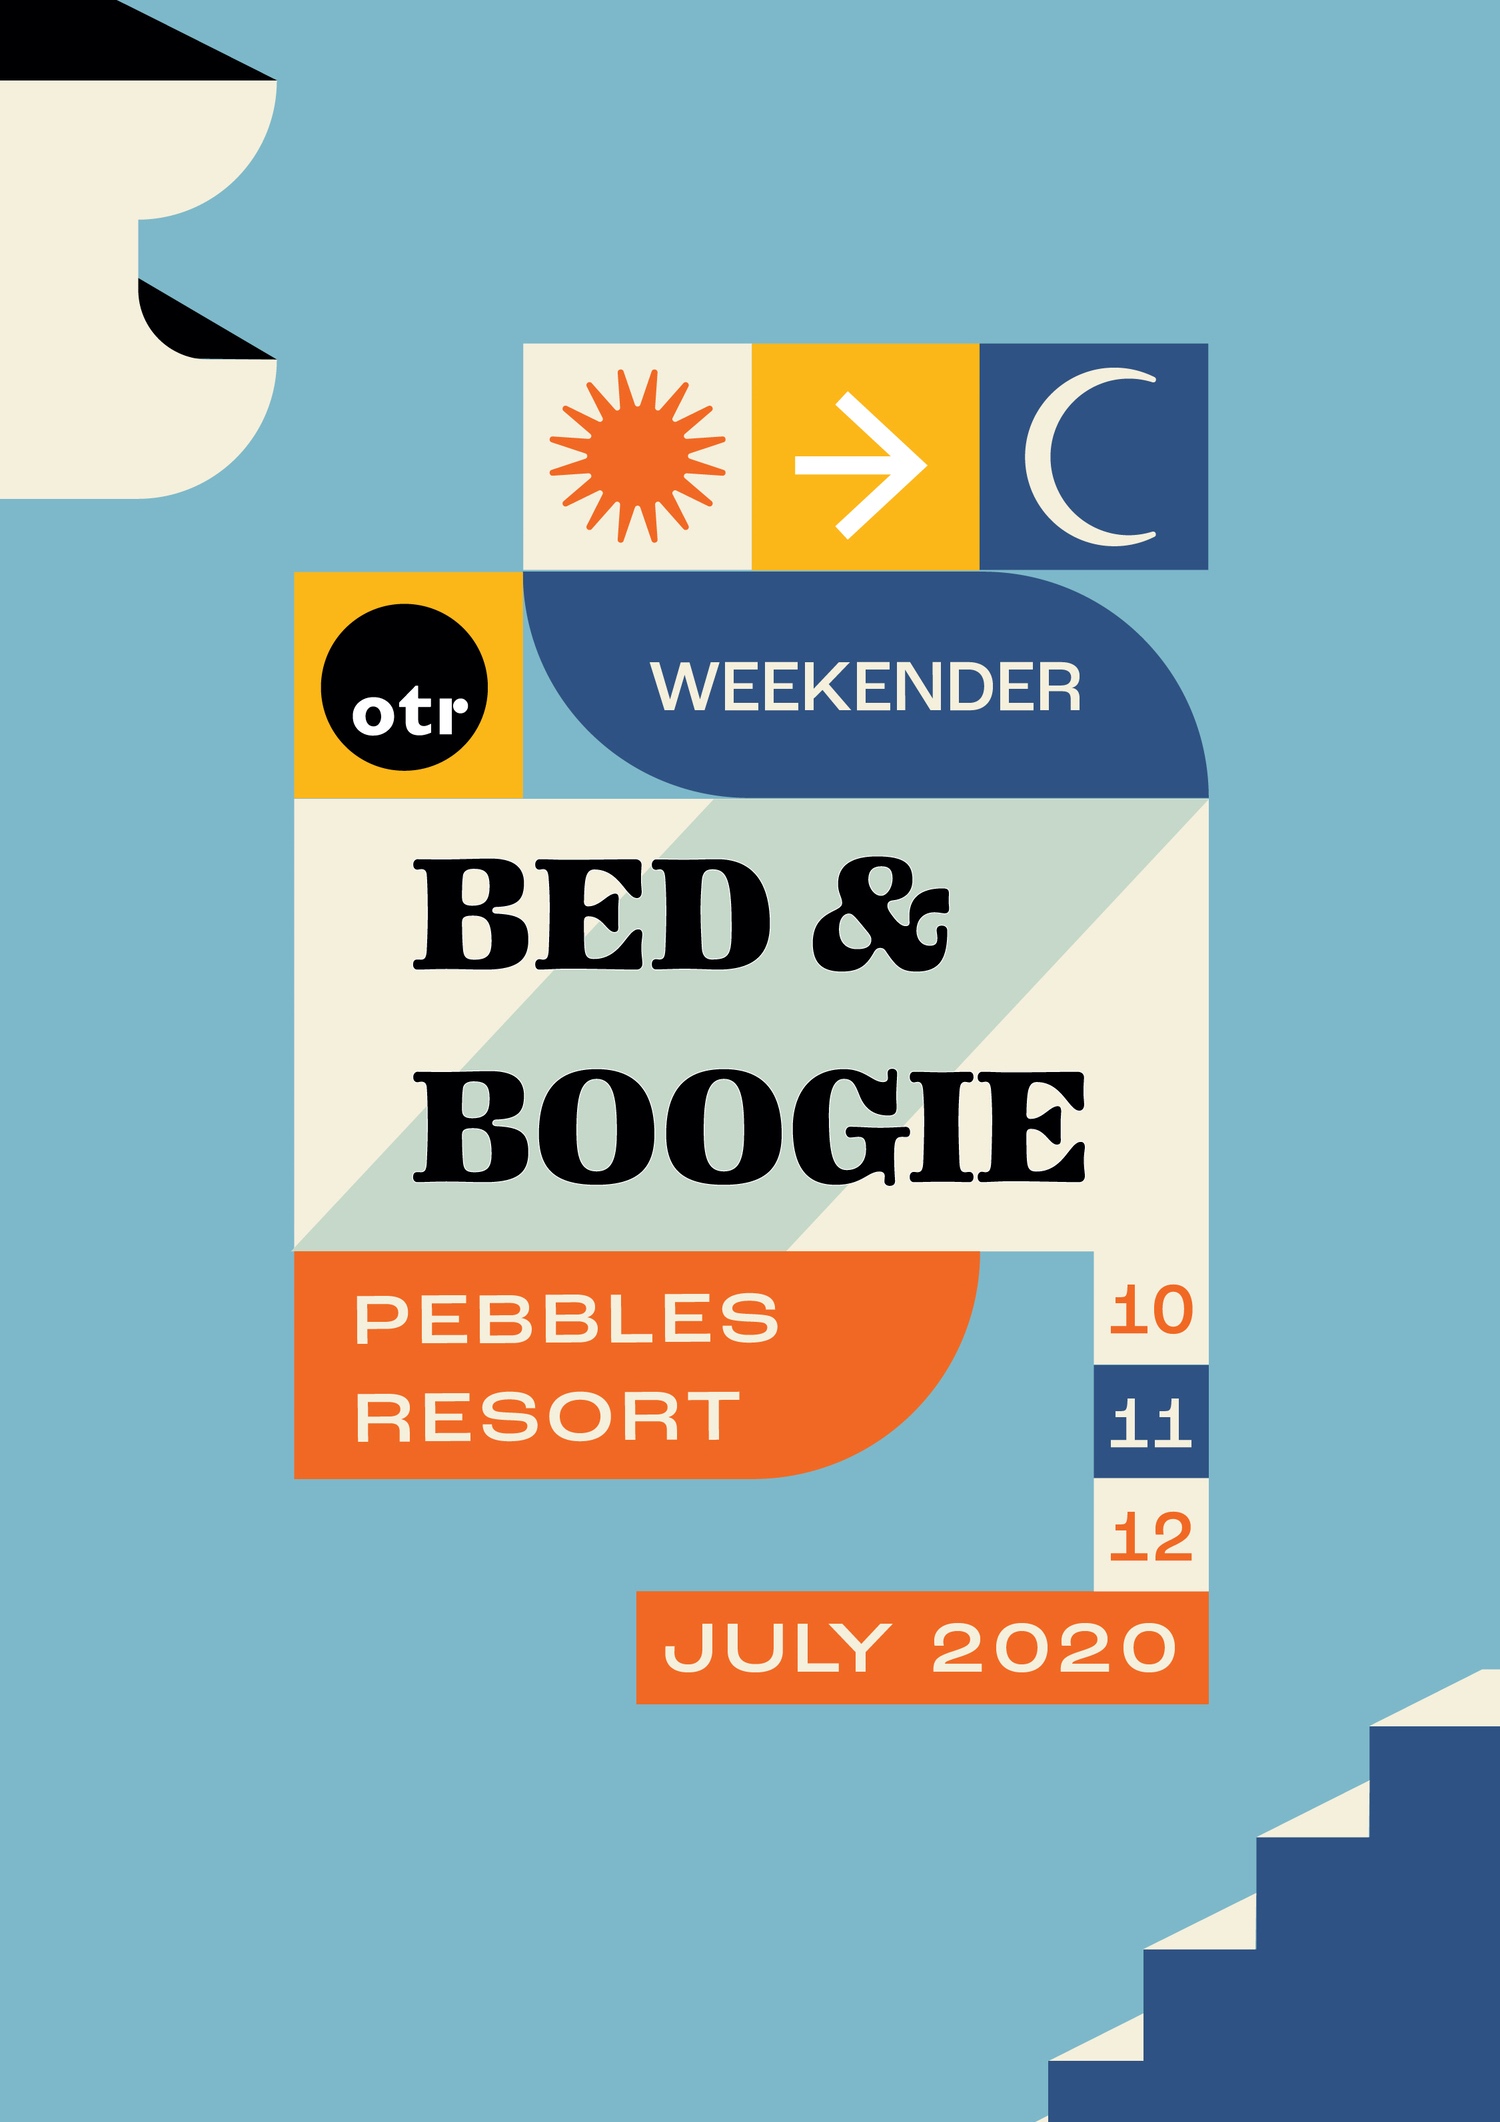 OTR Bed & Boogie Weekender 2020 poster